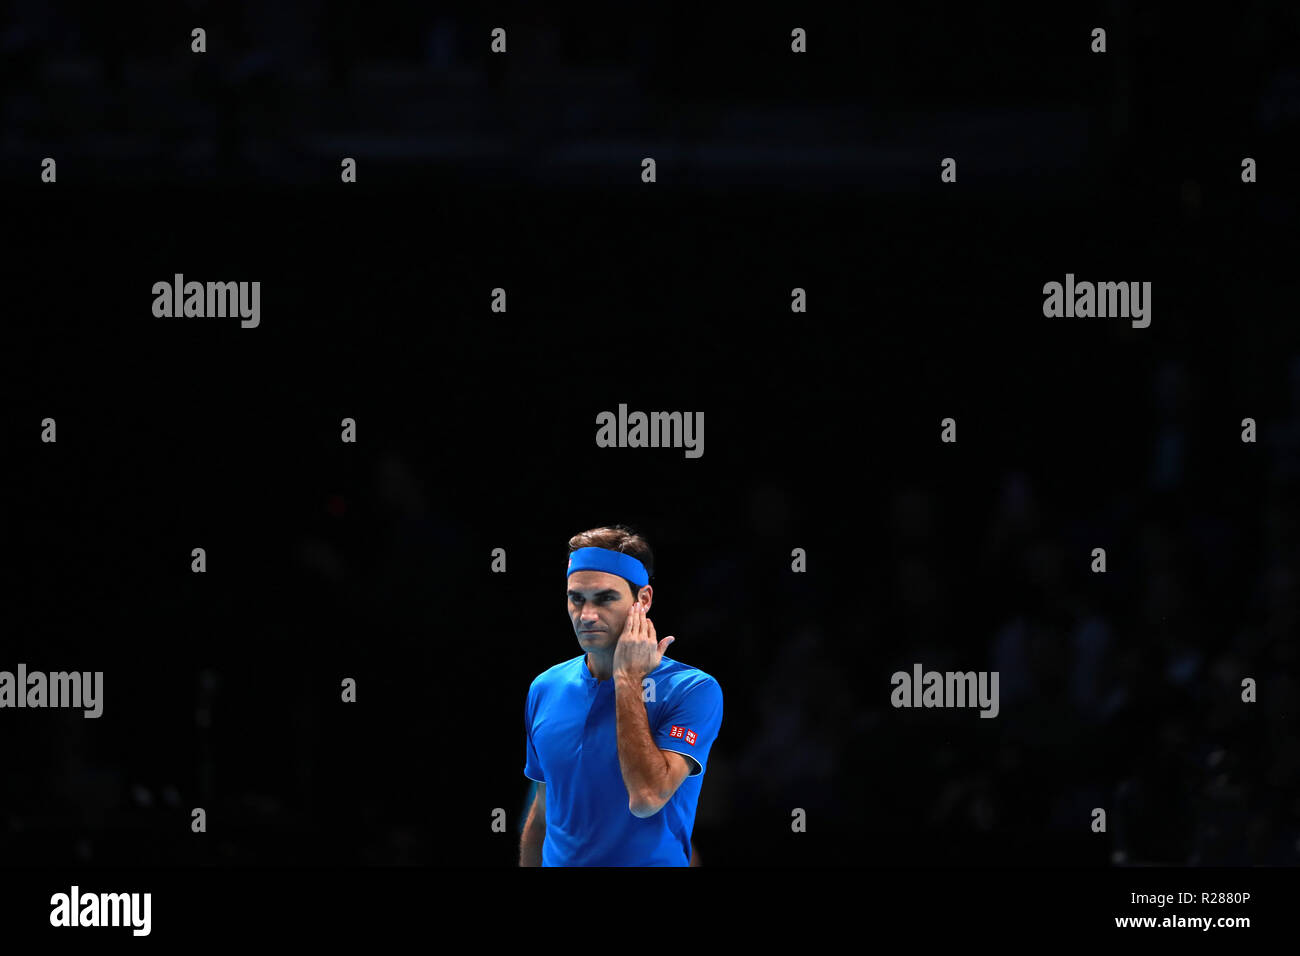 17 novembre 2018, O2 Arena, London, England ; Nitto ATP Tennis Finale, Roger Federer (SUI) a l'air peiné dans son match de demi-finale contre Alexander Zverev (GER) Banque D'Images